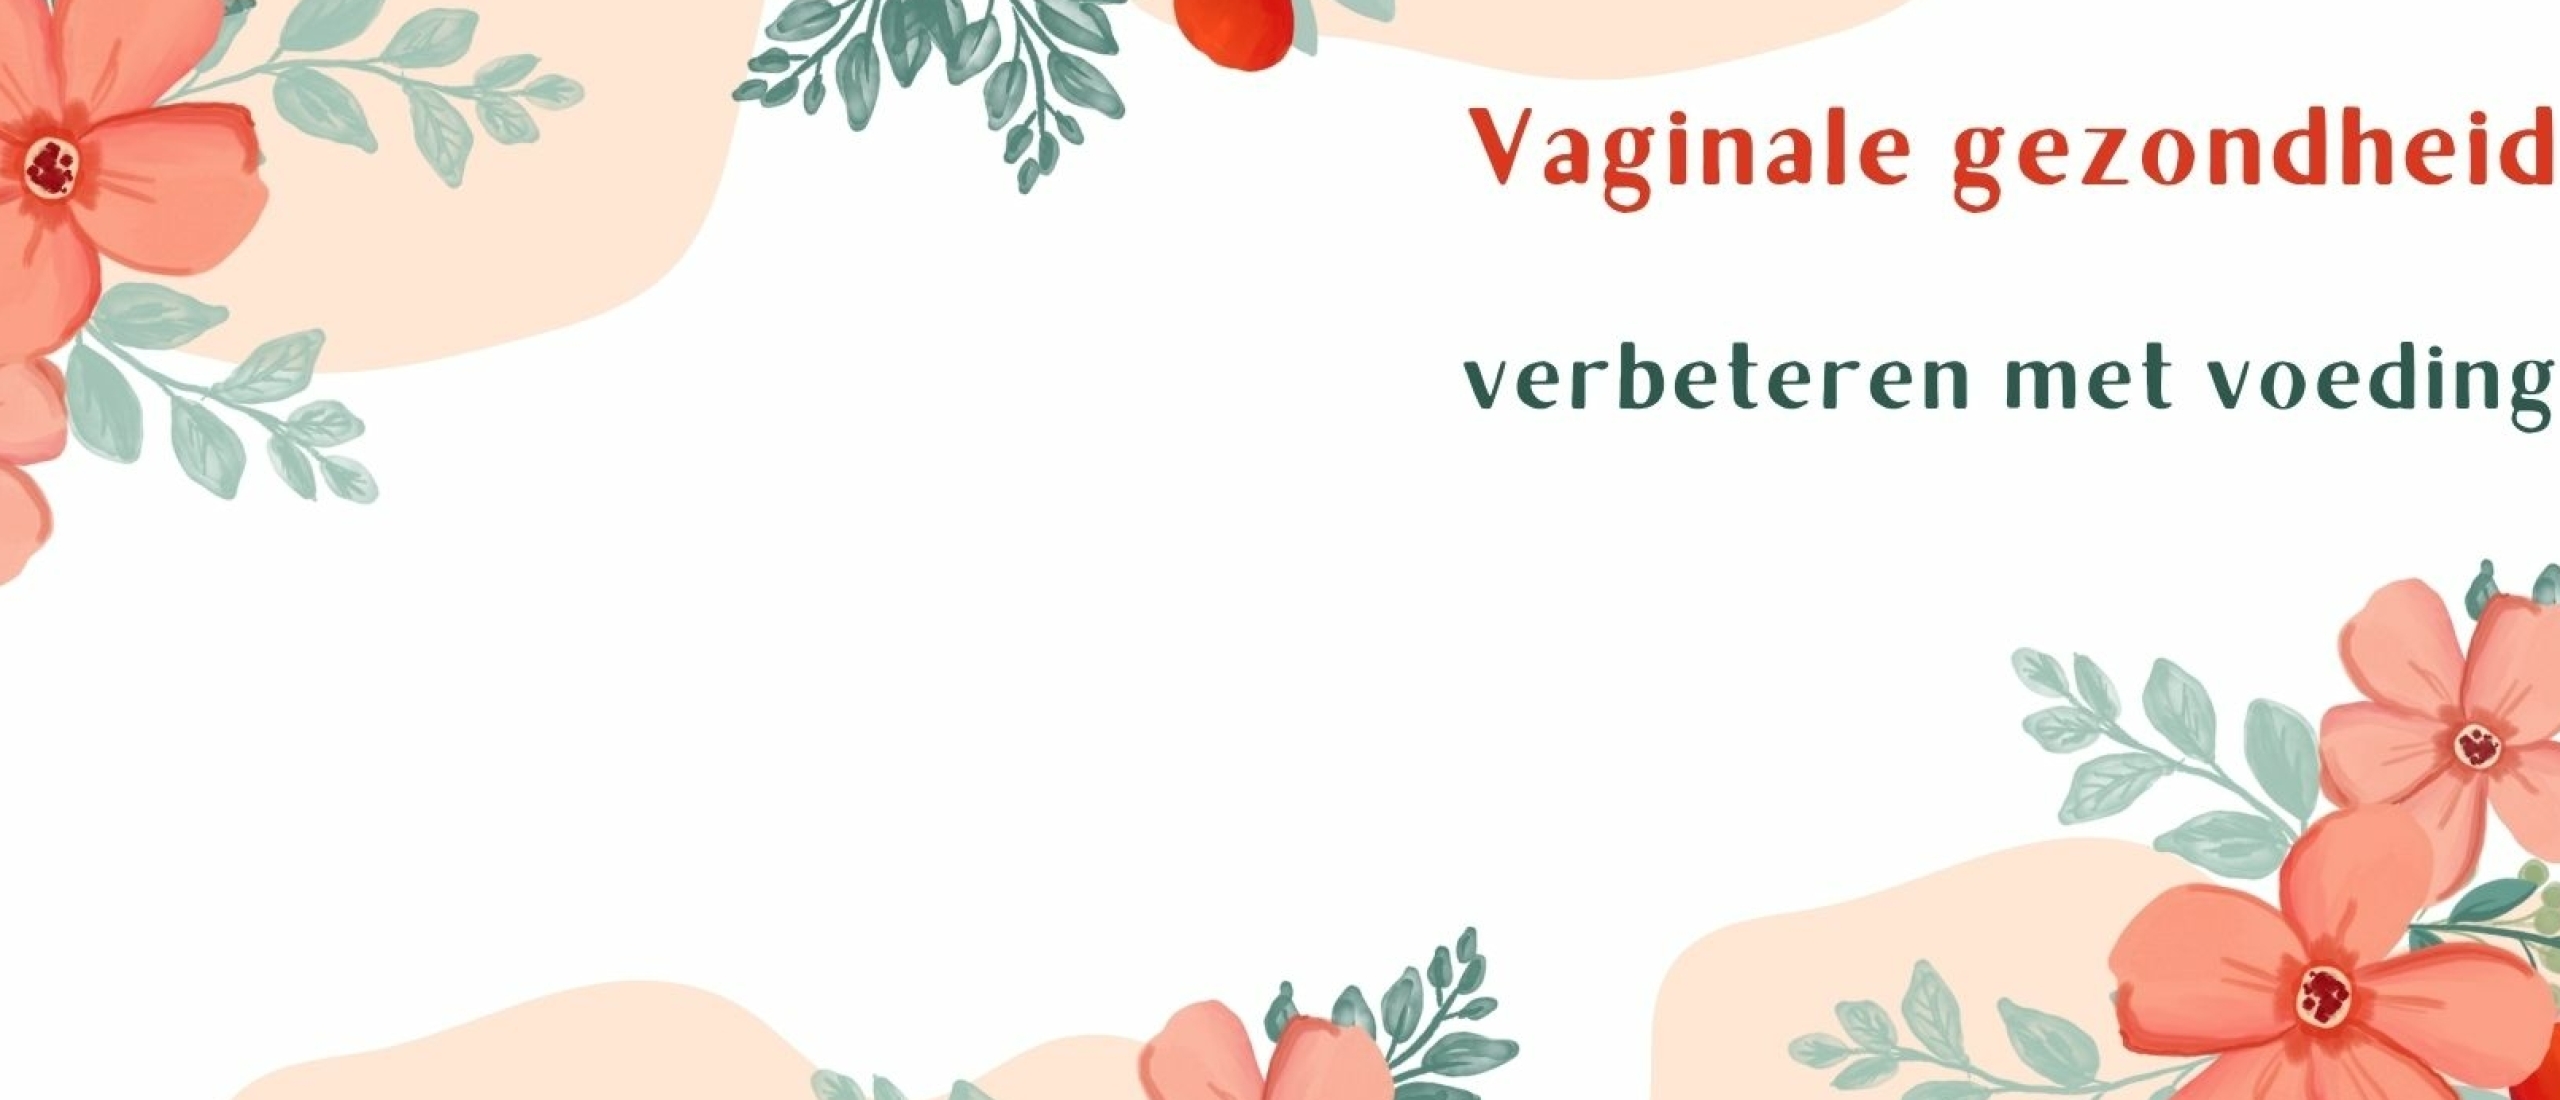 Hoe kan je vaginale gezondheid verbeteren door middel van voeding?